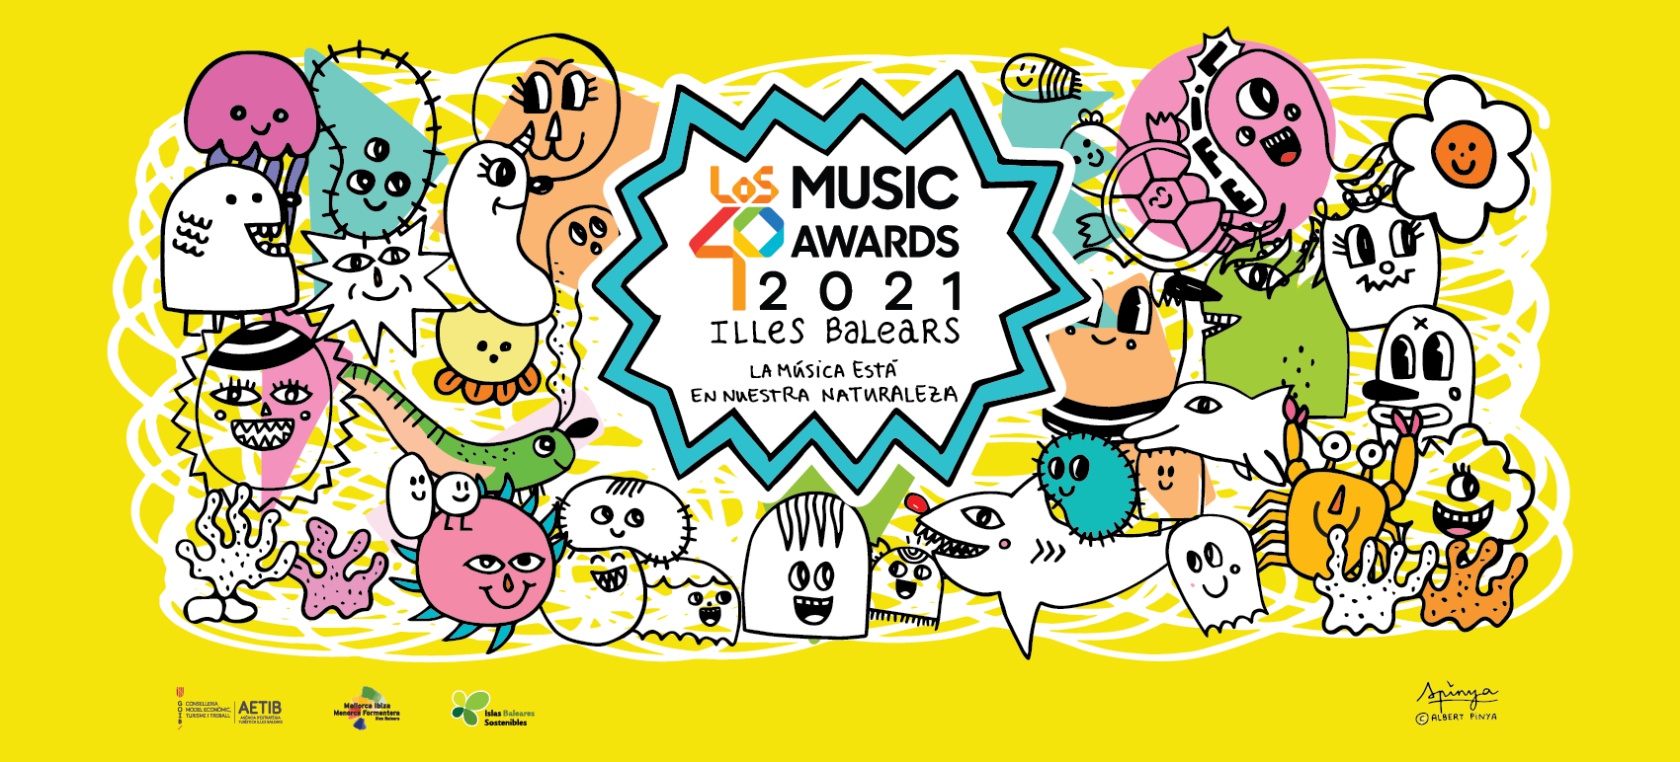 Toda la información sobre LOS40 Music Awards 2021 Illes Balears: nominados, fecha, actuaciones y más